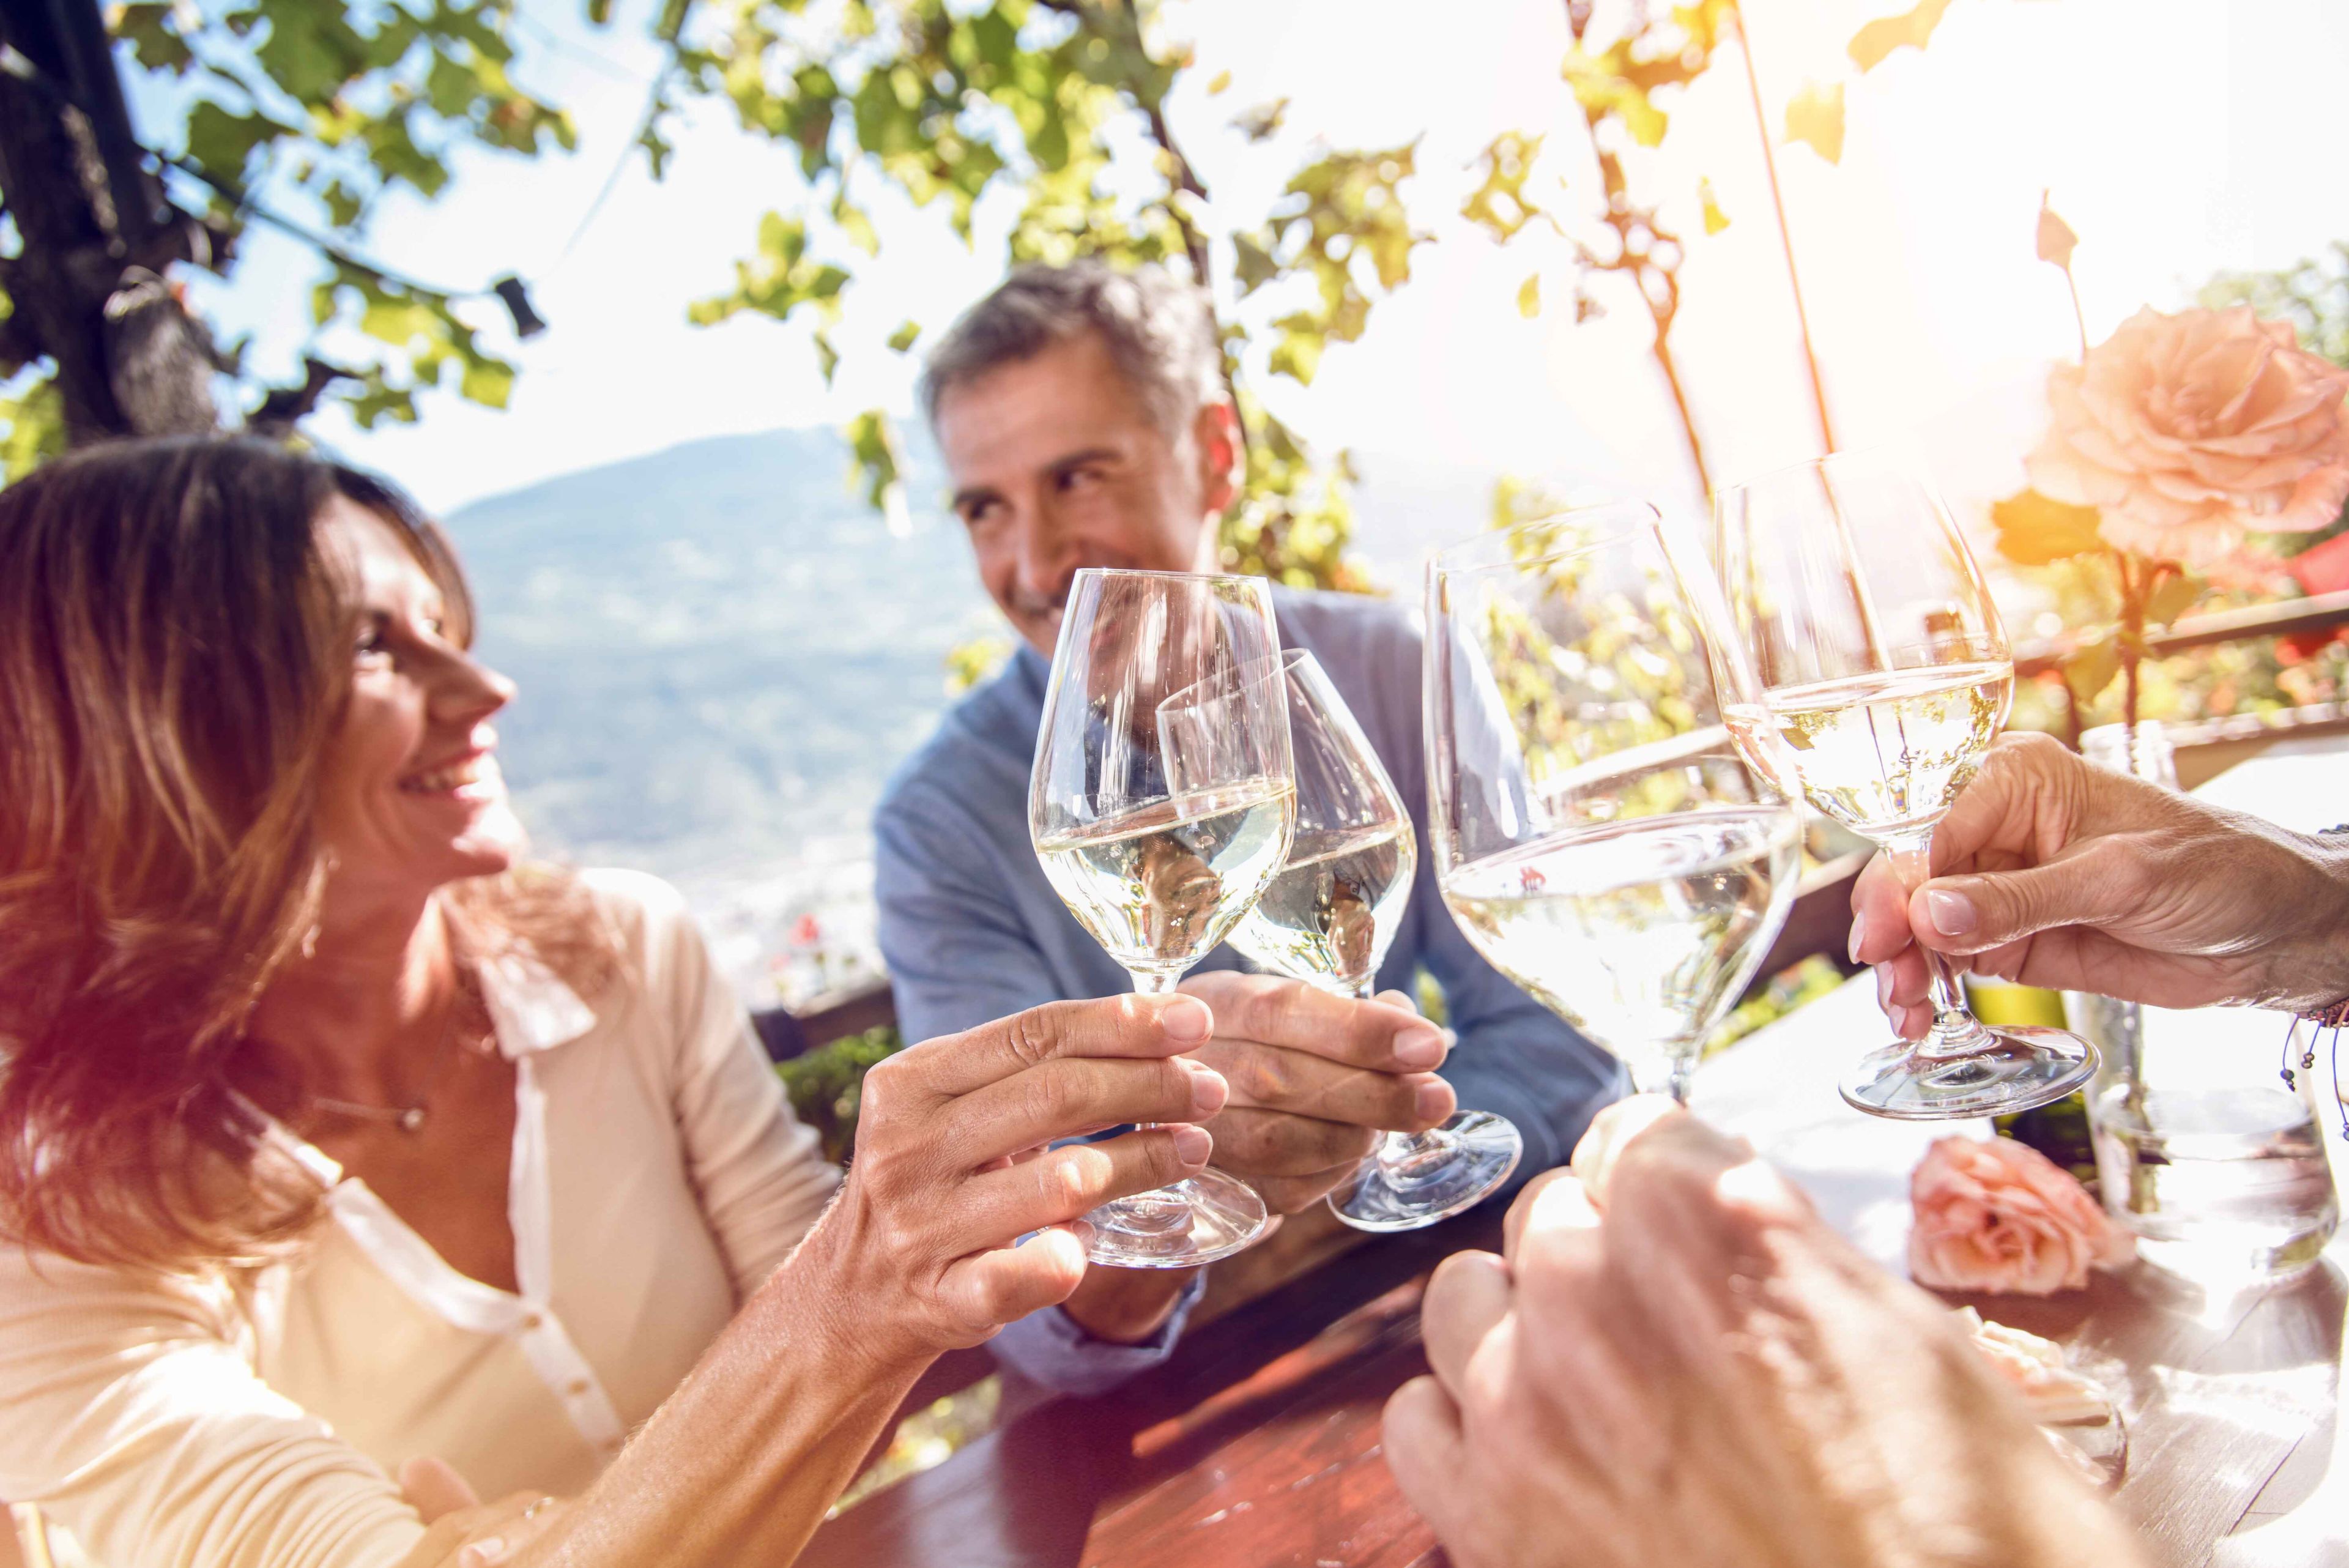 Freunde stoßen bei einem geselligen Beisammensein mit Weißwein an.  Wallis, Schweiz.